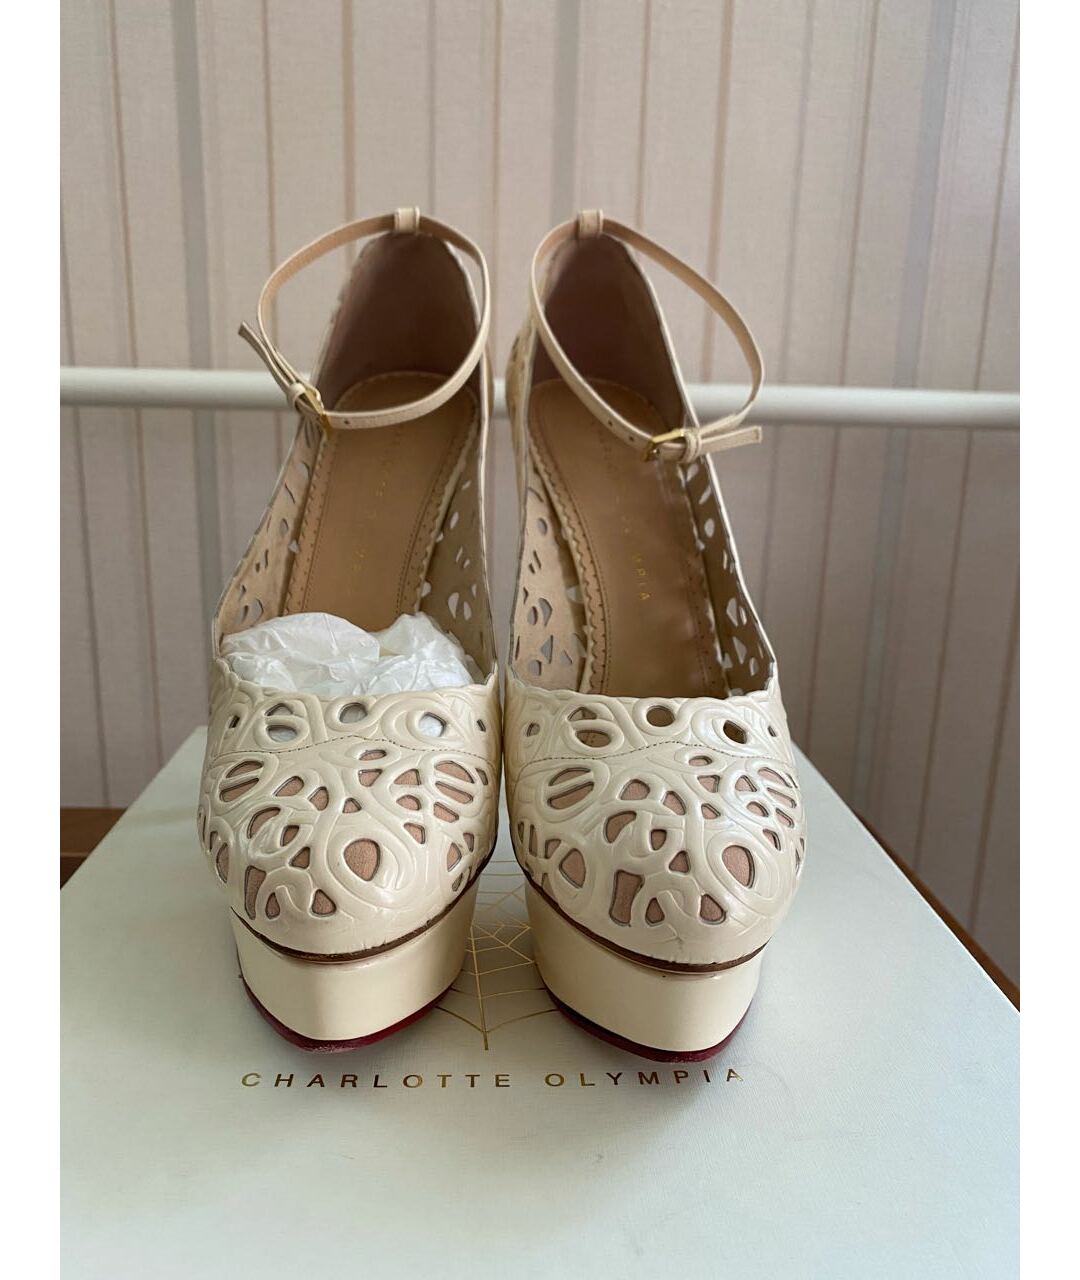 CHARLOTTE OLYMPIA Бежевые кожаные свадебные туфли на высоком каблуке, фото 2